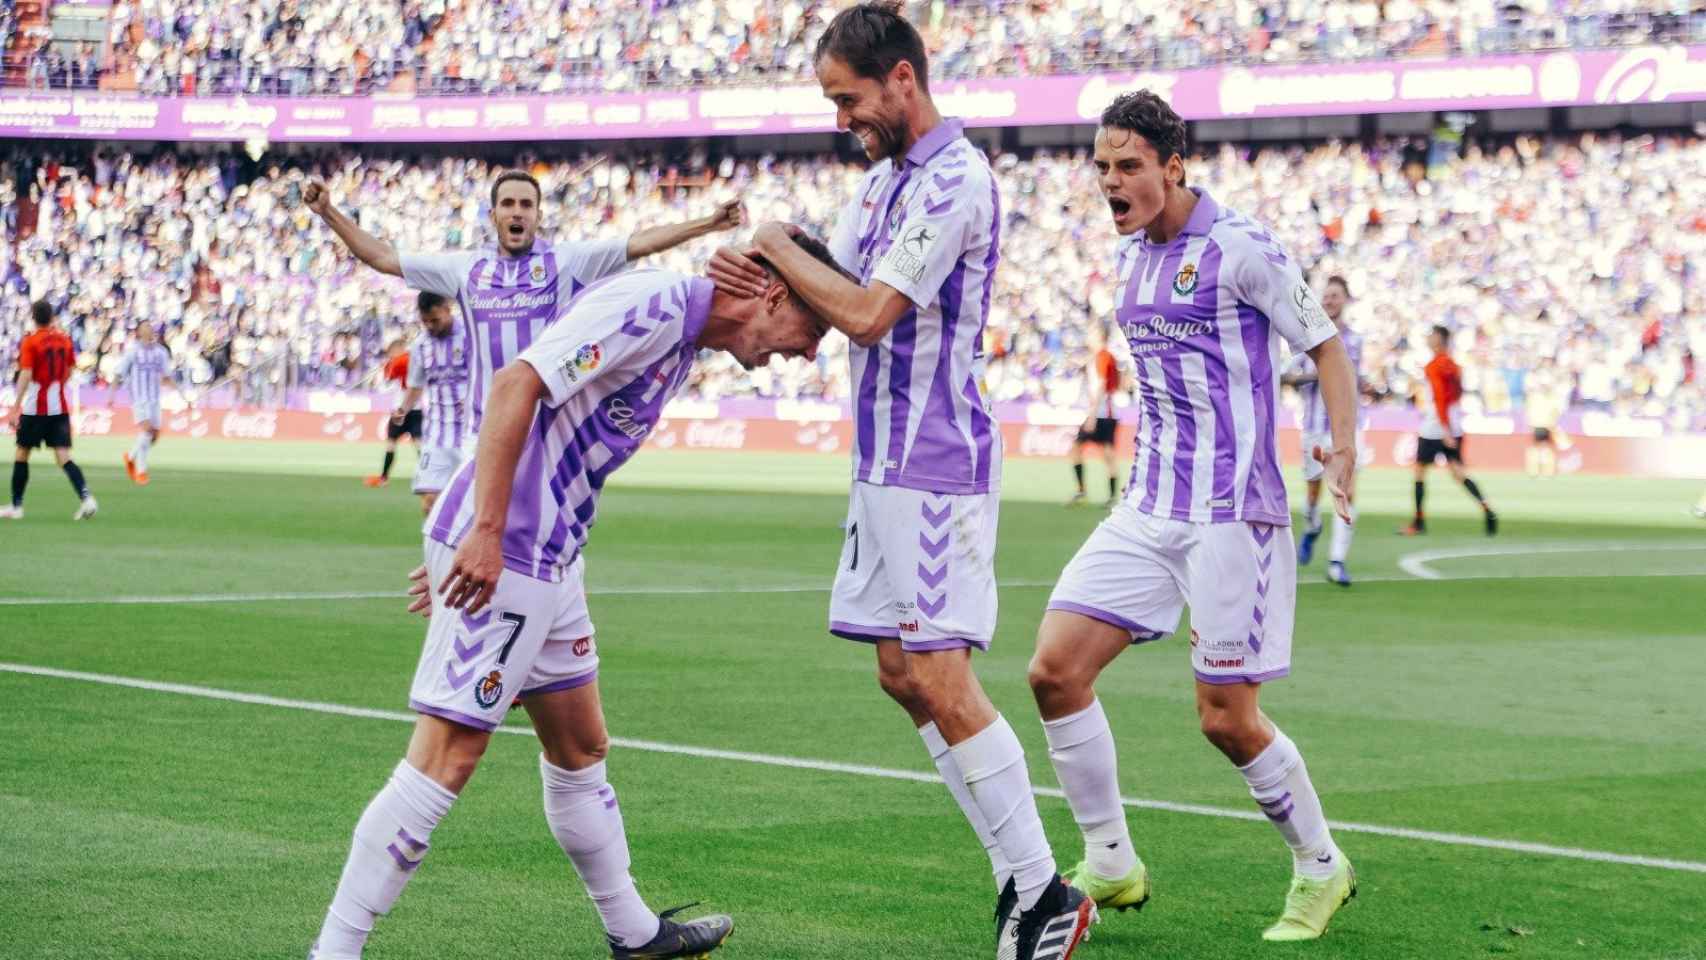 Los jugadores del Valladolid durante un partido /REDES